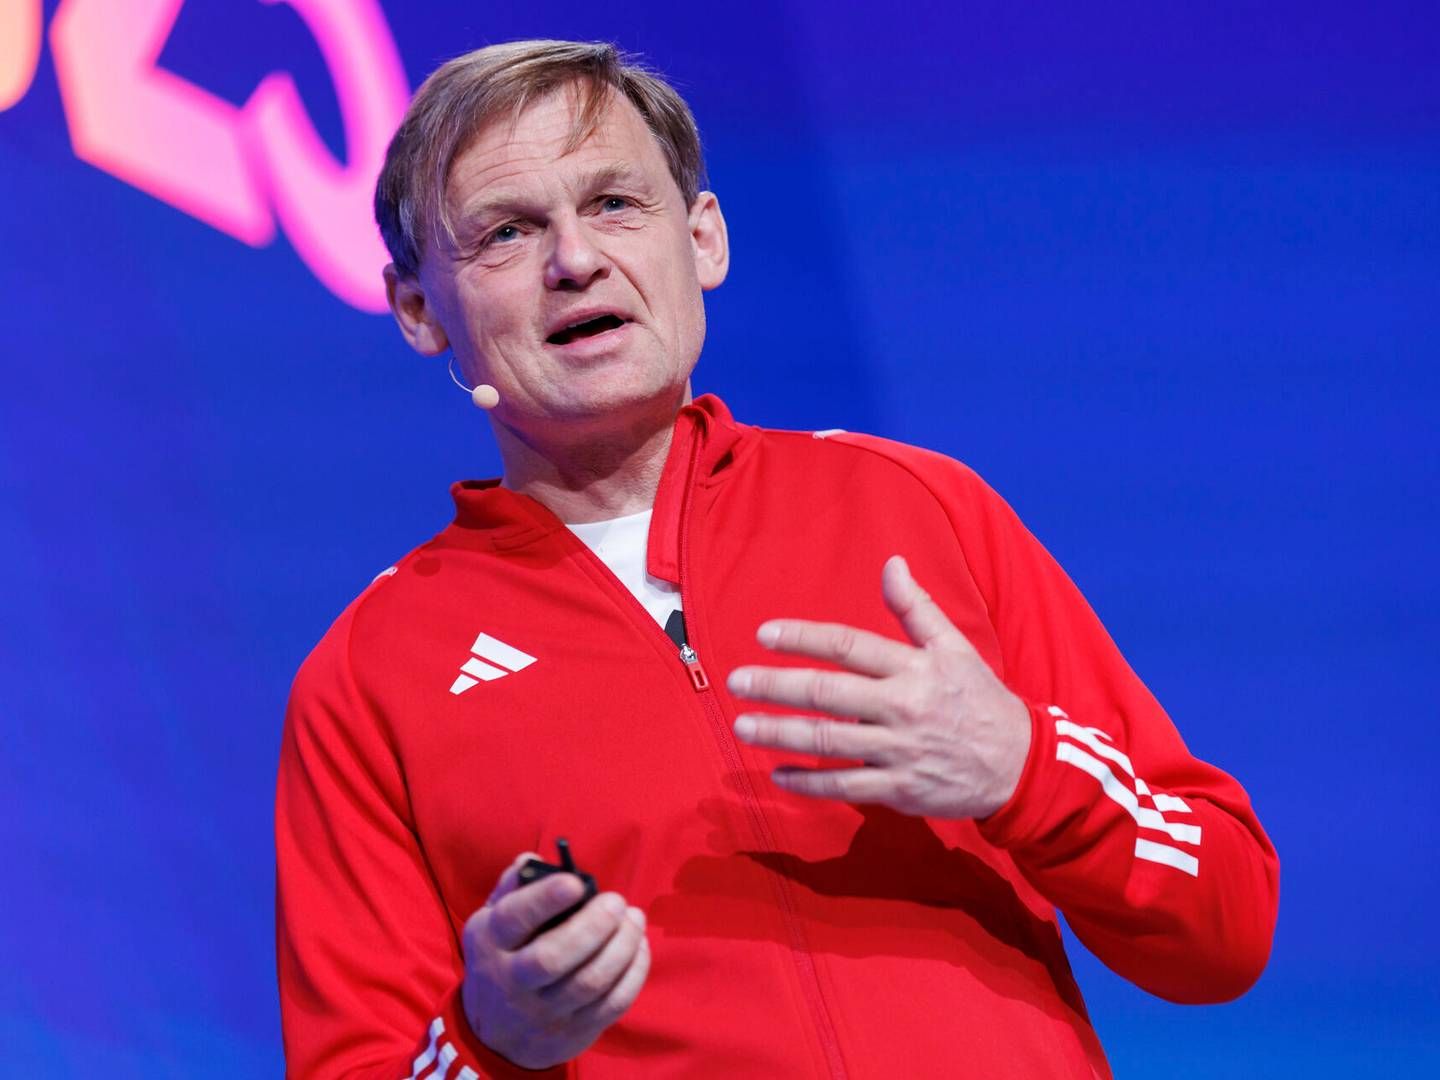 Adidas-topchef Bjørn Gulden undskylder for at have taget den kontroversielle kunstner i forsvar. | Foto: Daniel Karmann/AP/Ritzau Scanpix